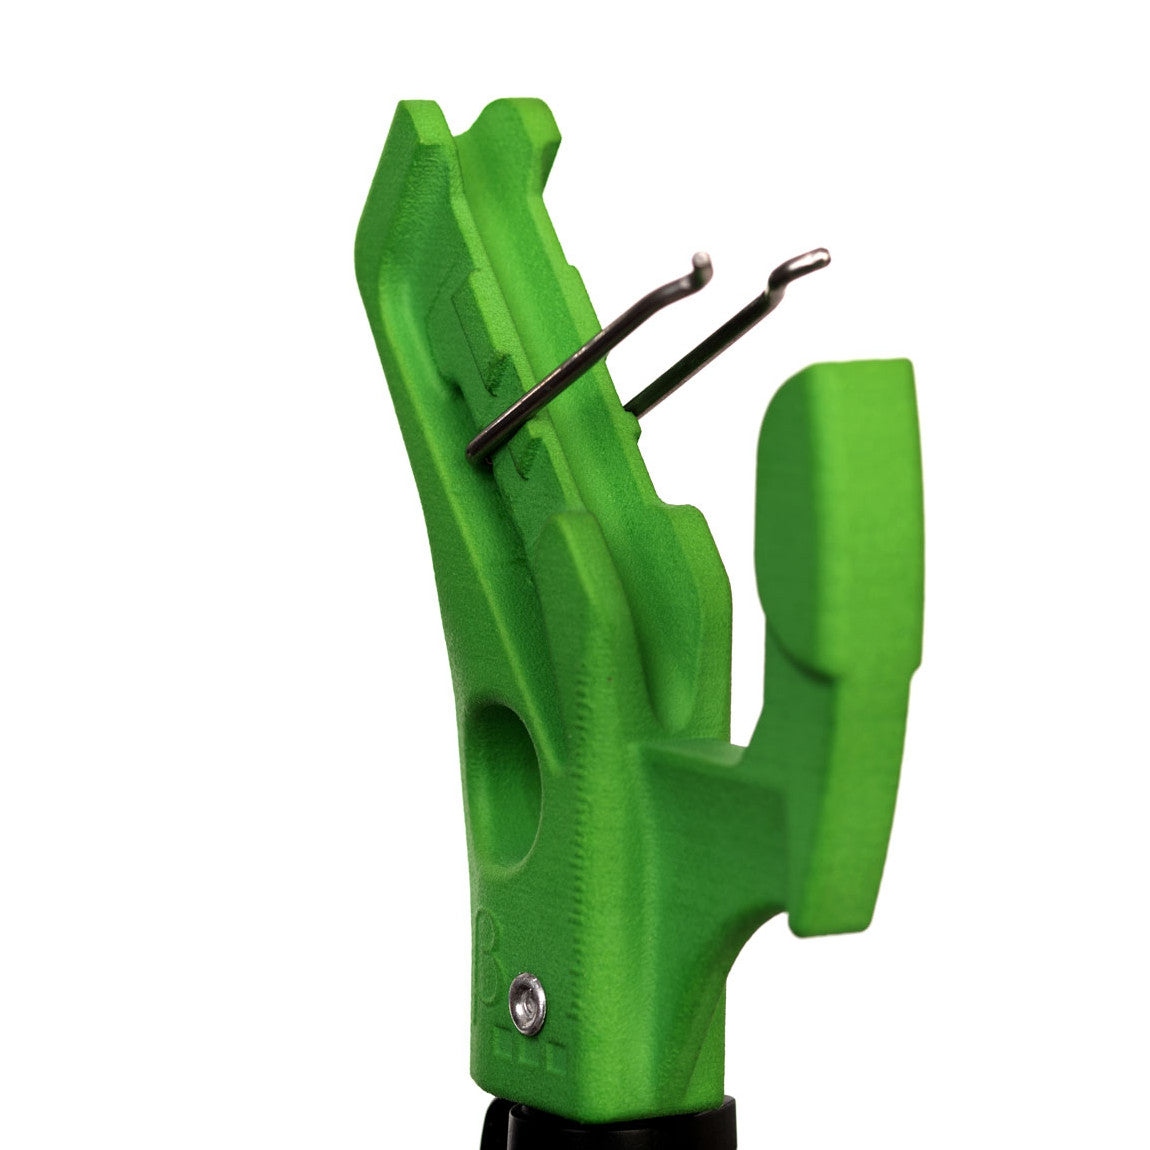 BetaStick EVO Super Standard head, in green colour